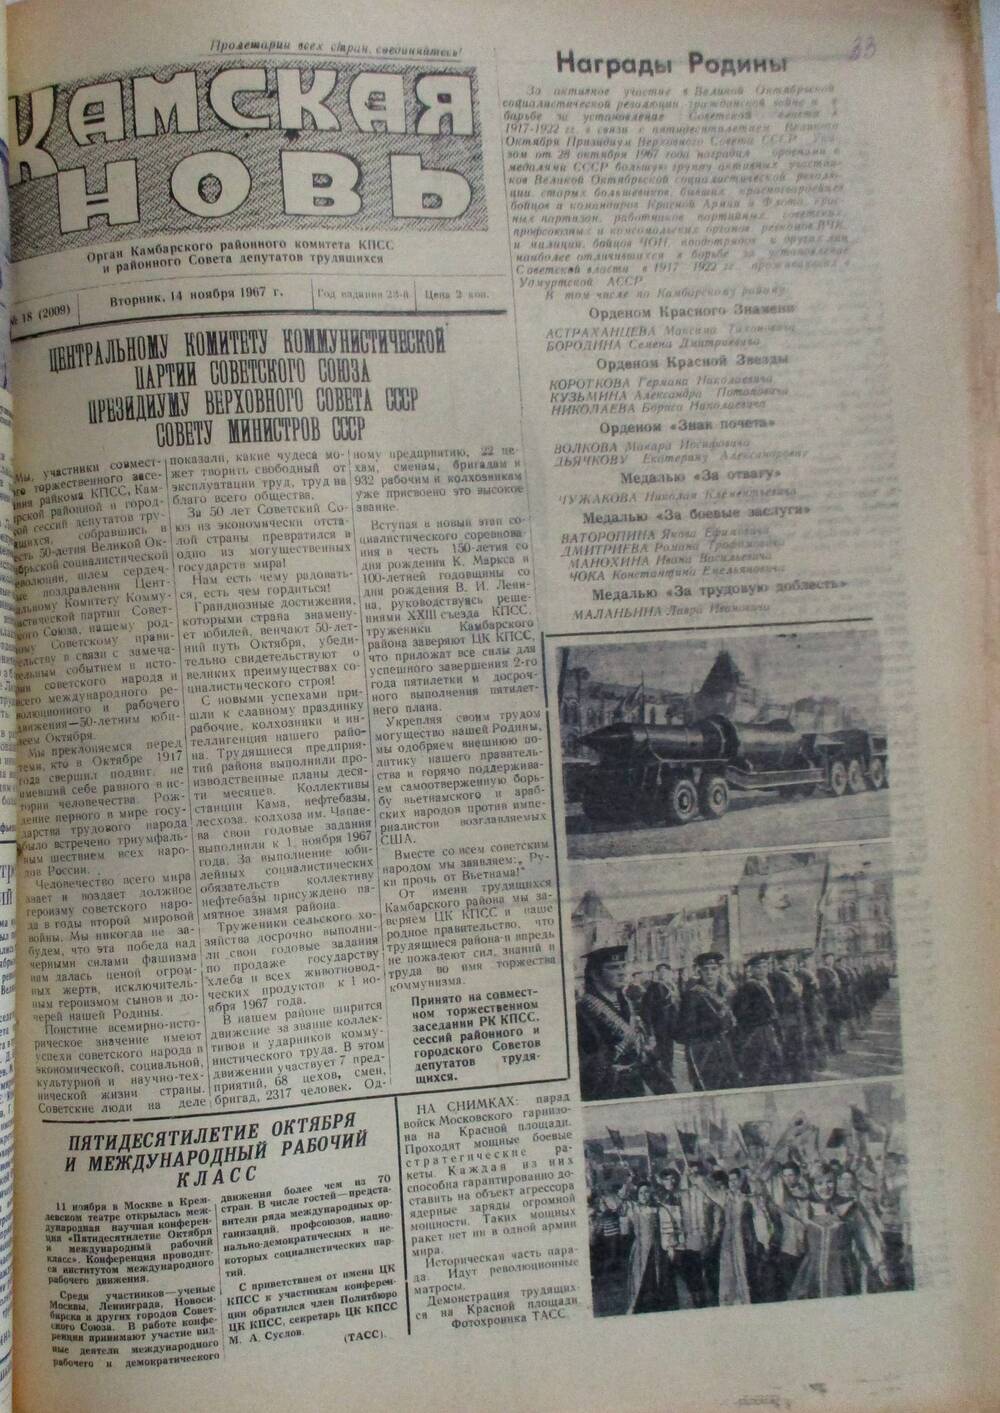 Подшивка газет Камская новь с №1 по №31, 1967 г., №18.